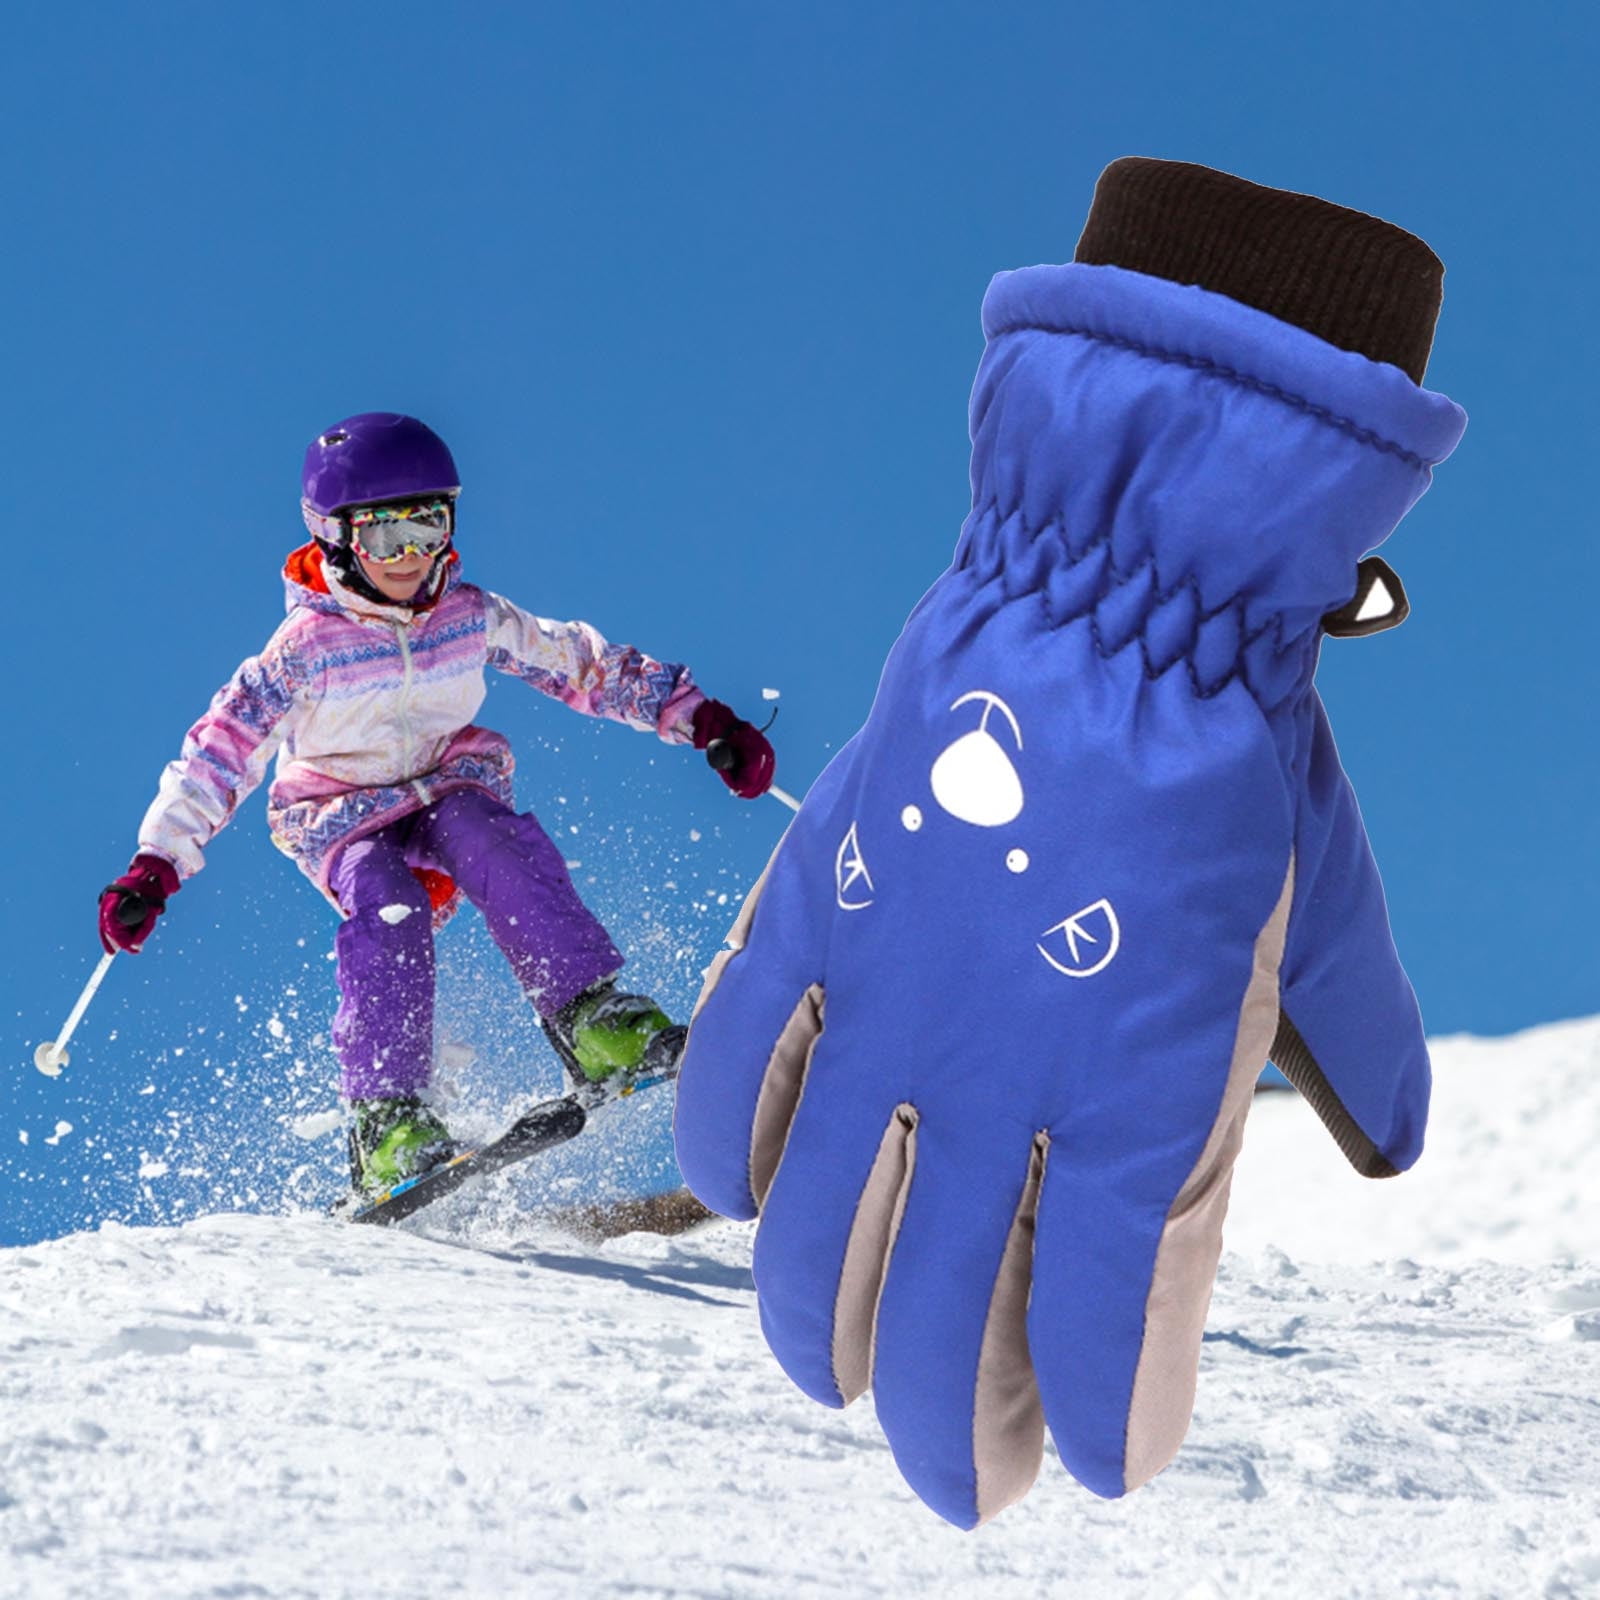 Ski gloves: Warm hands on the slope